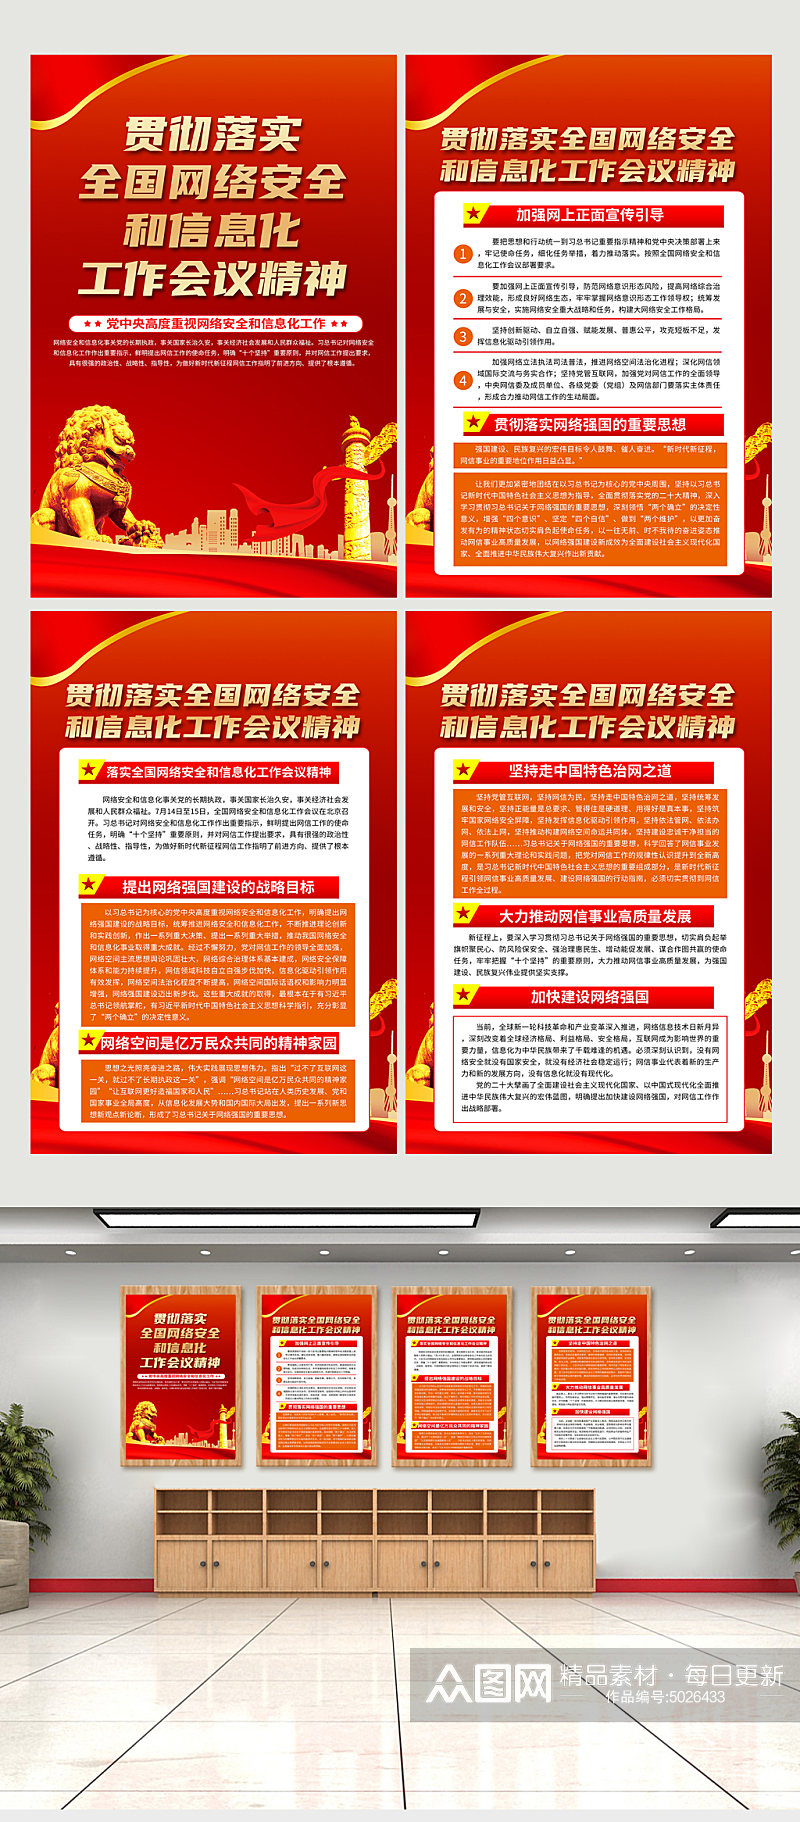 红色网络安全和信息化工作会议精神党建海报素材